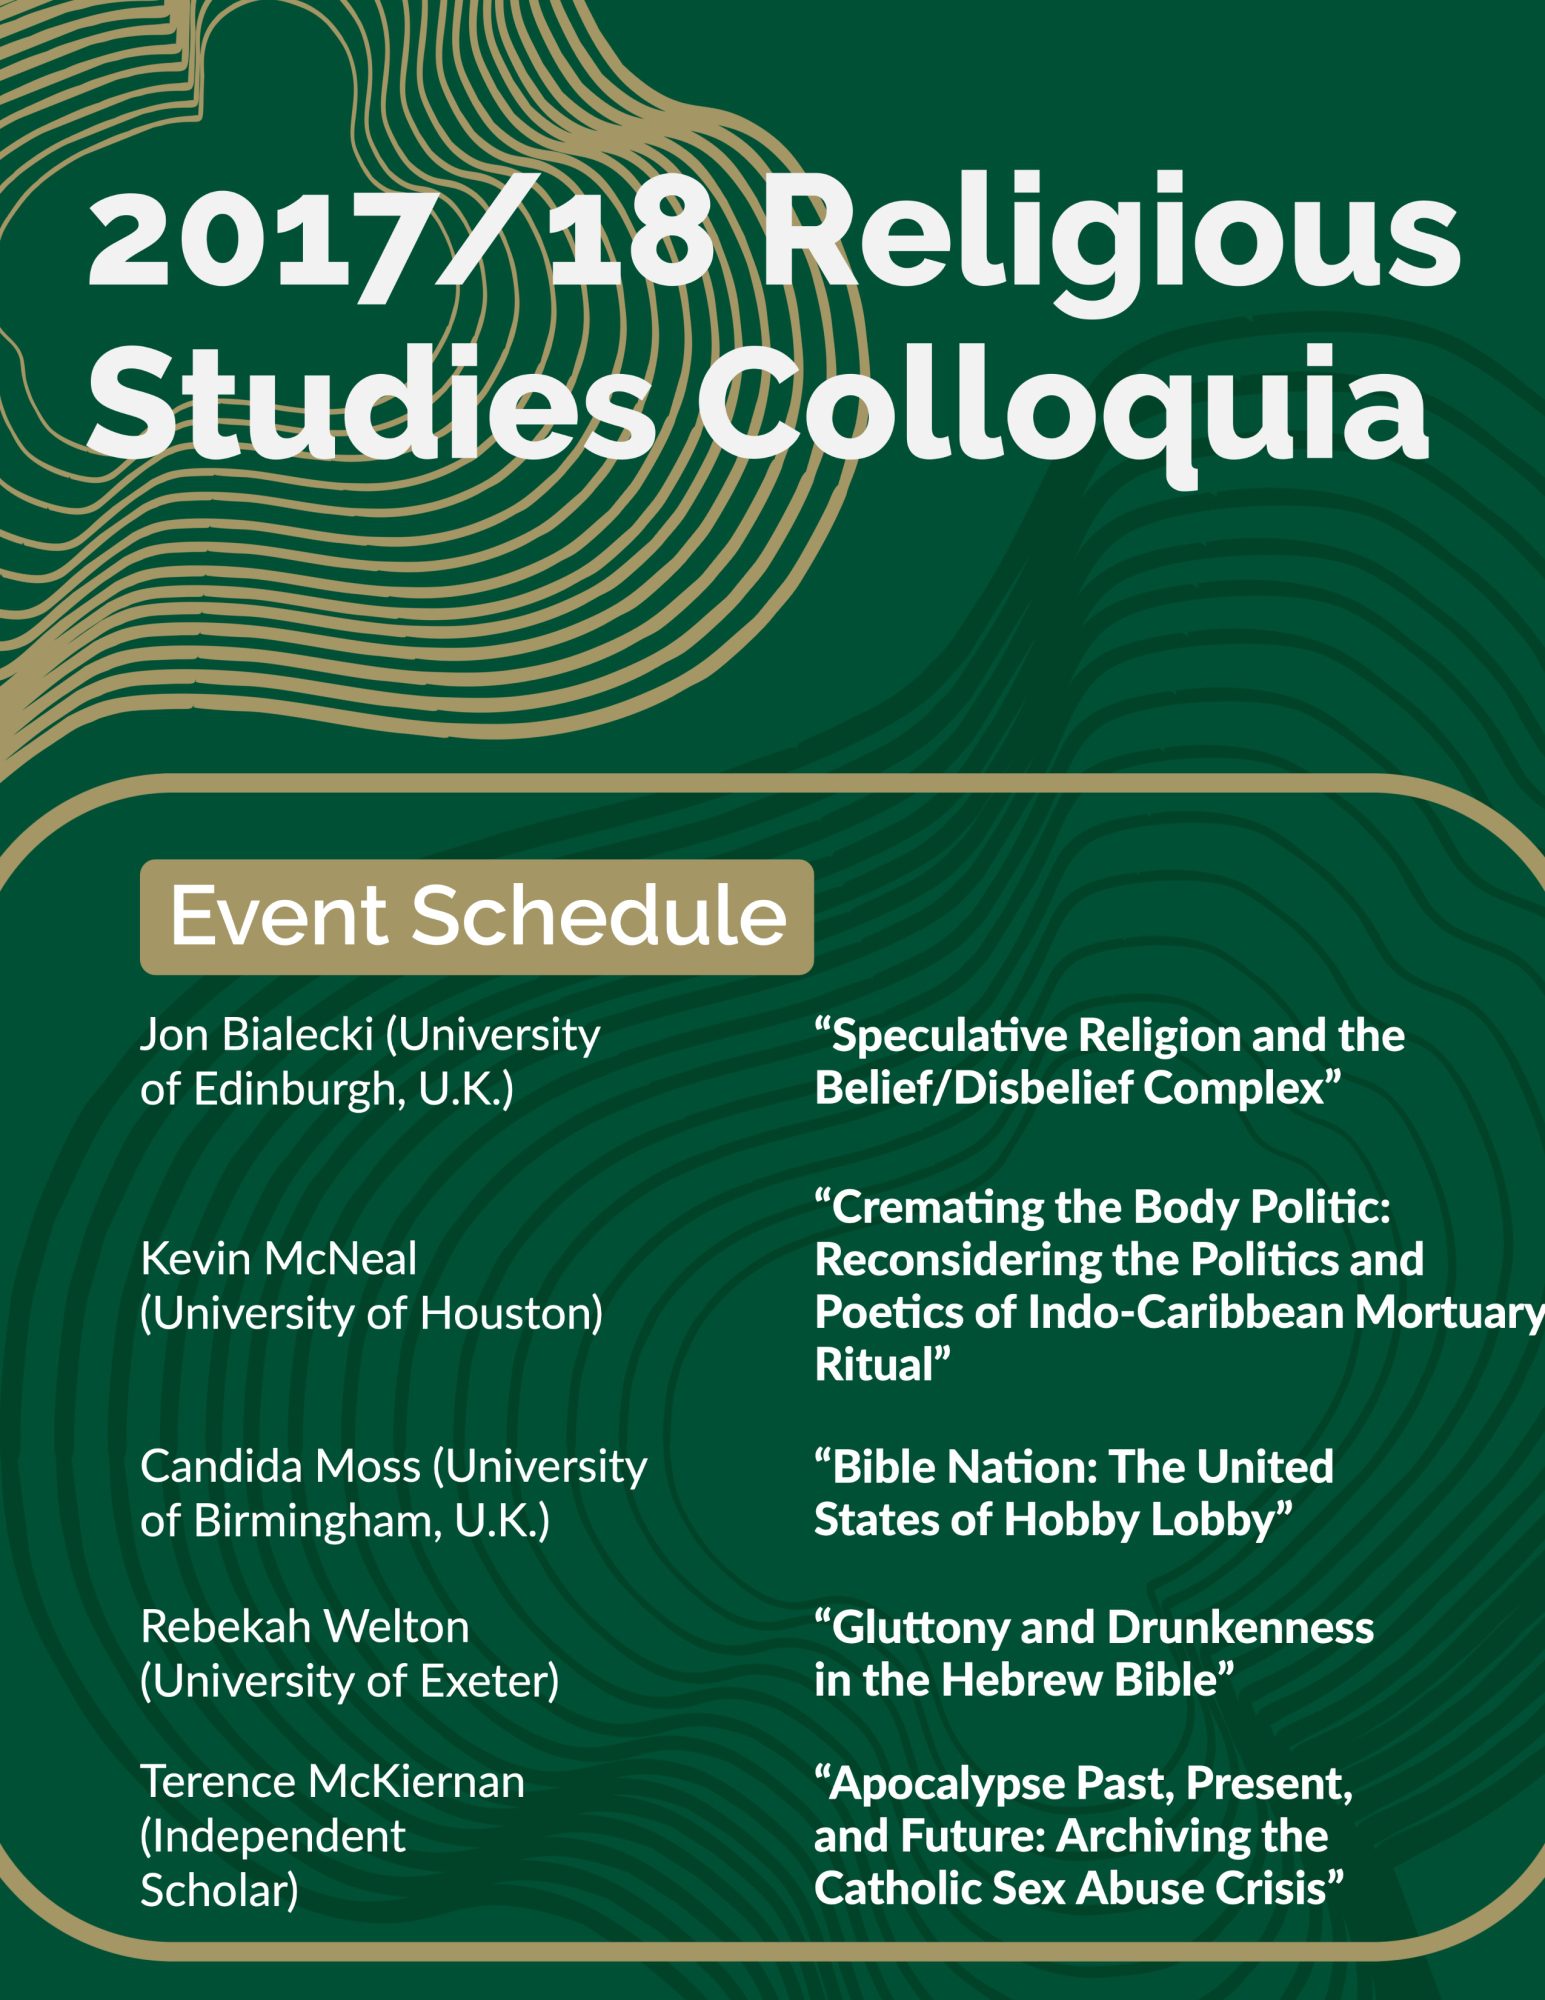 2017/18 Religious Studies Colloquia
Event Schedule